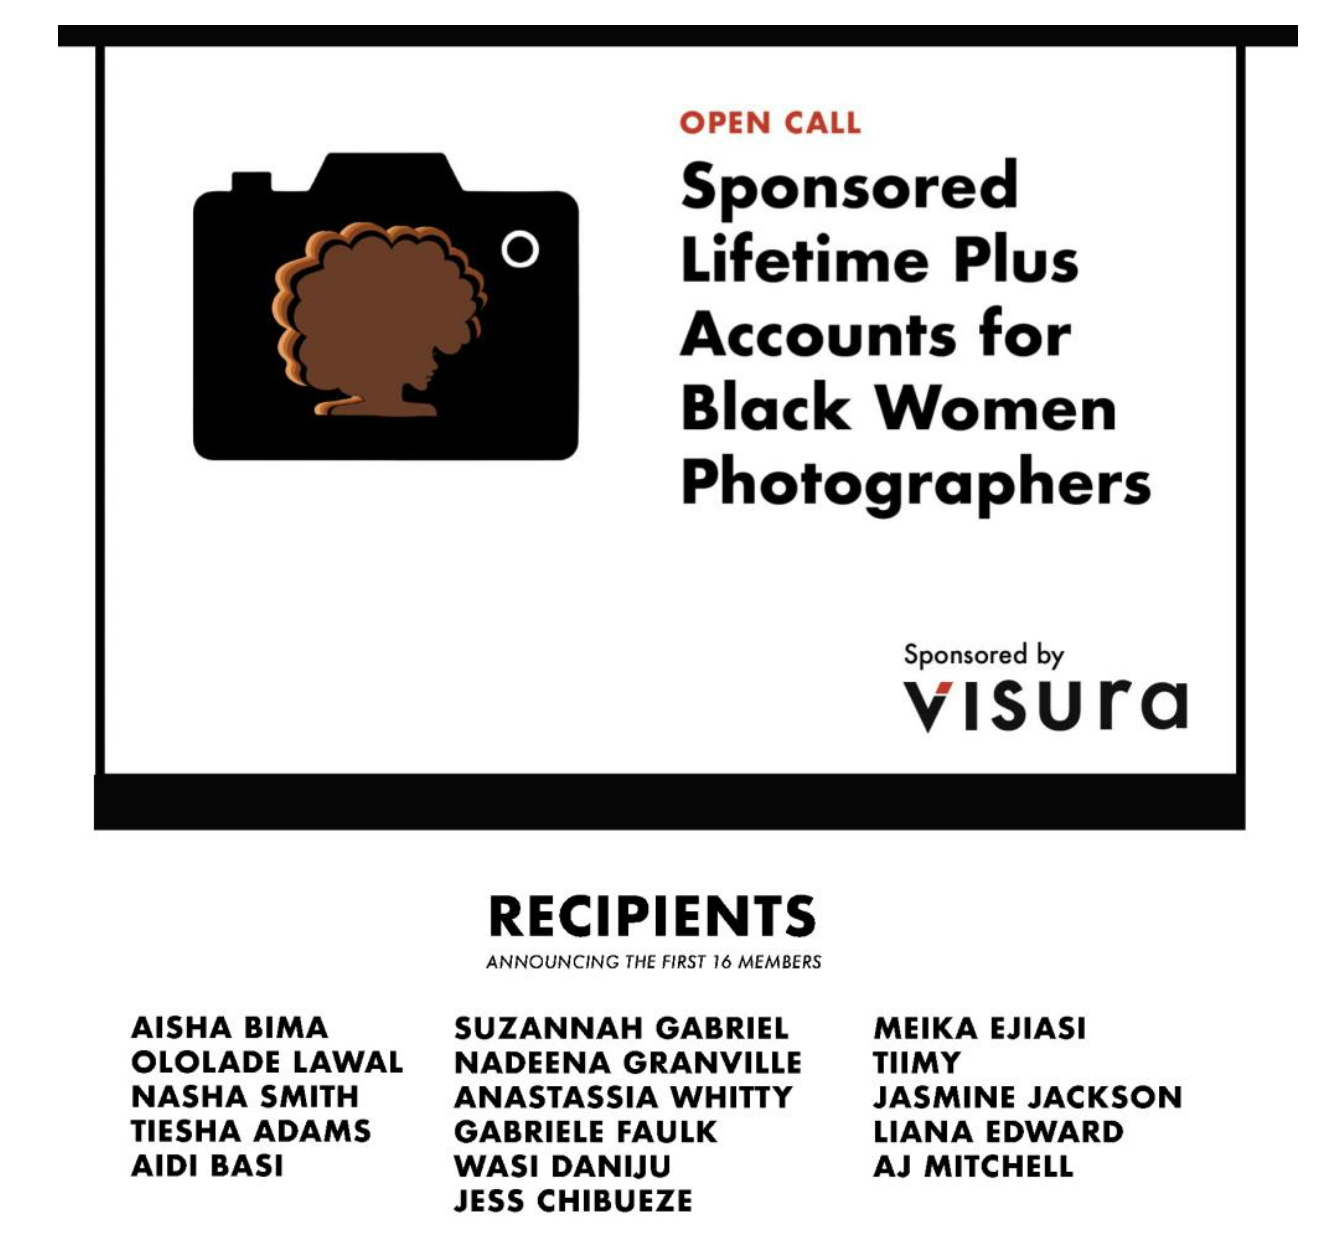 Winner of the Black Women Photographers Open Call for Visura